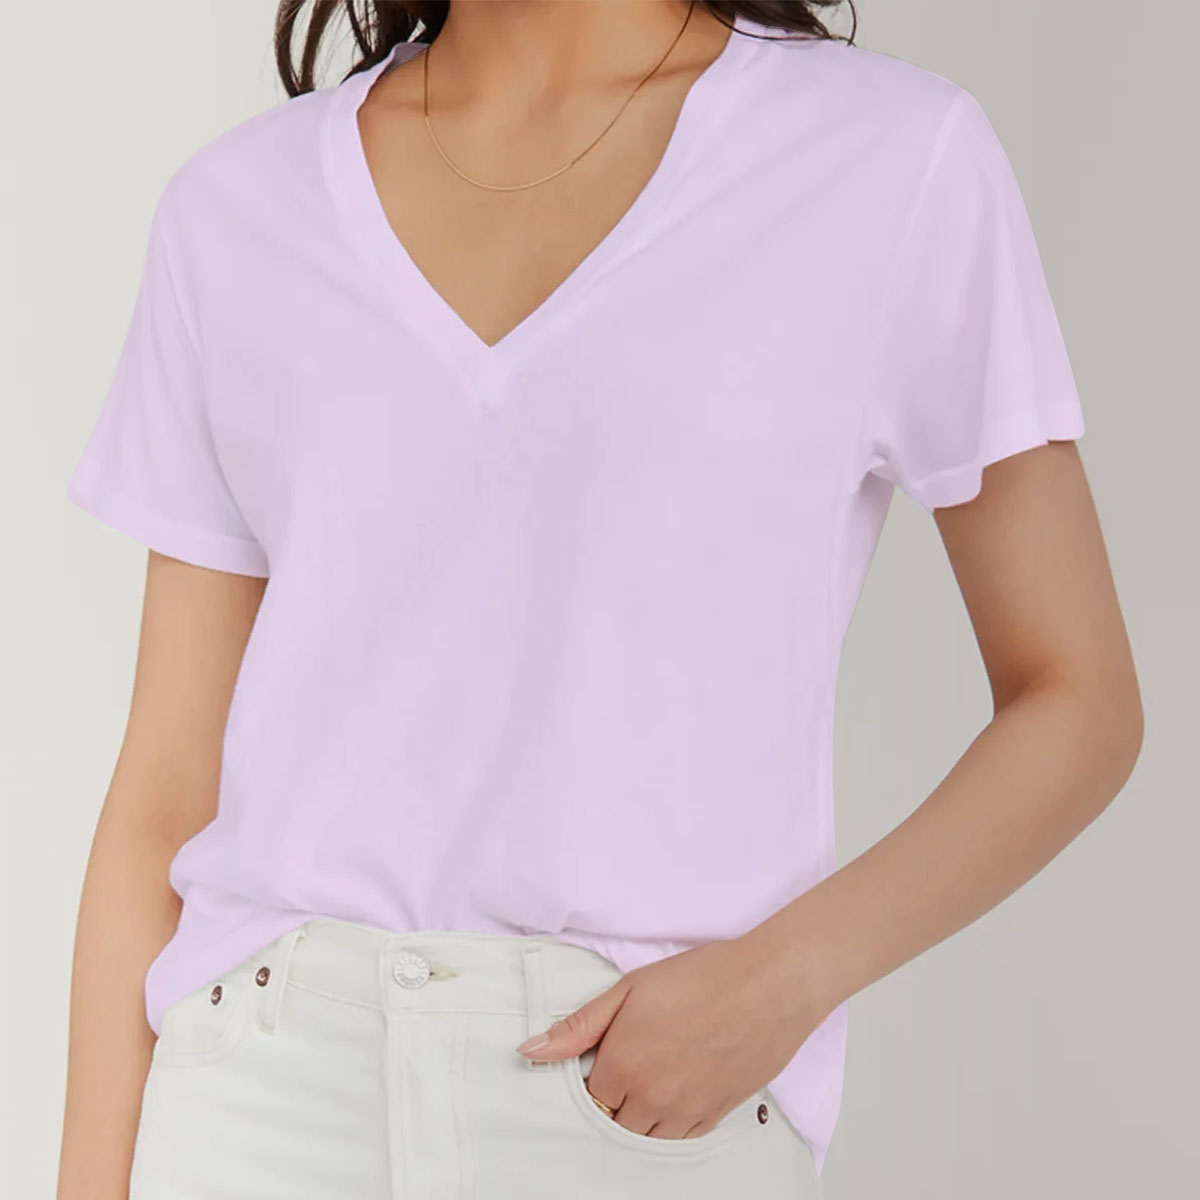 Classic Purple Butterfly pillow V-Neck Women's T-Shirt